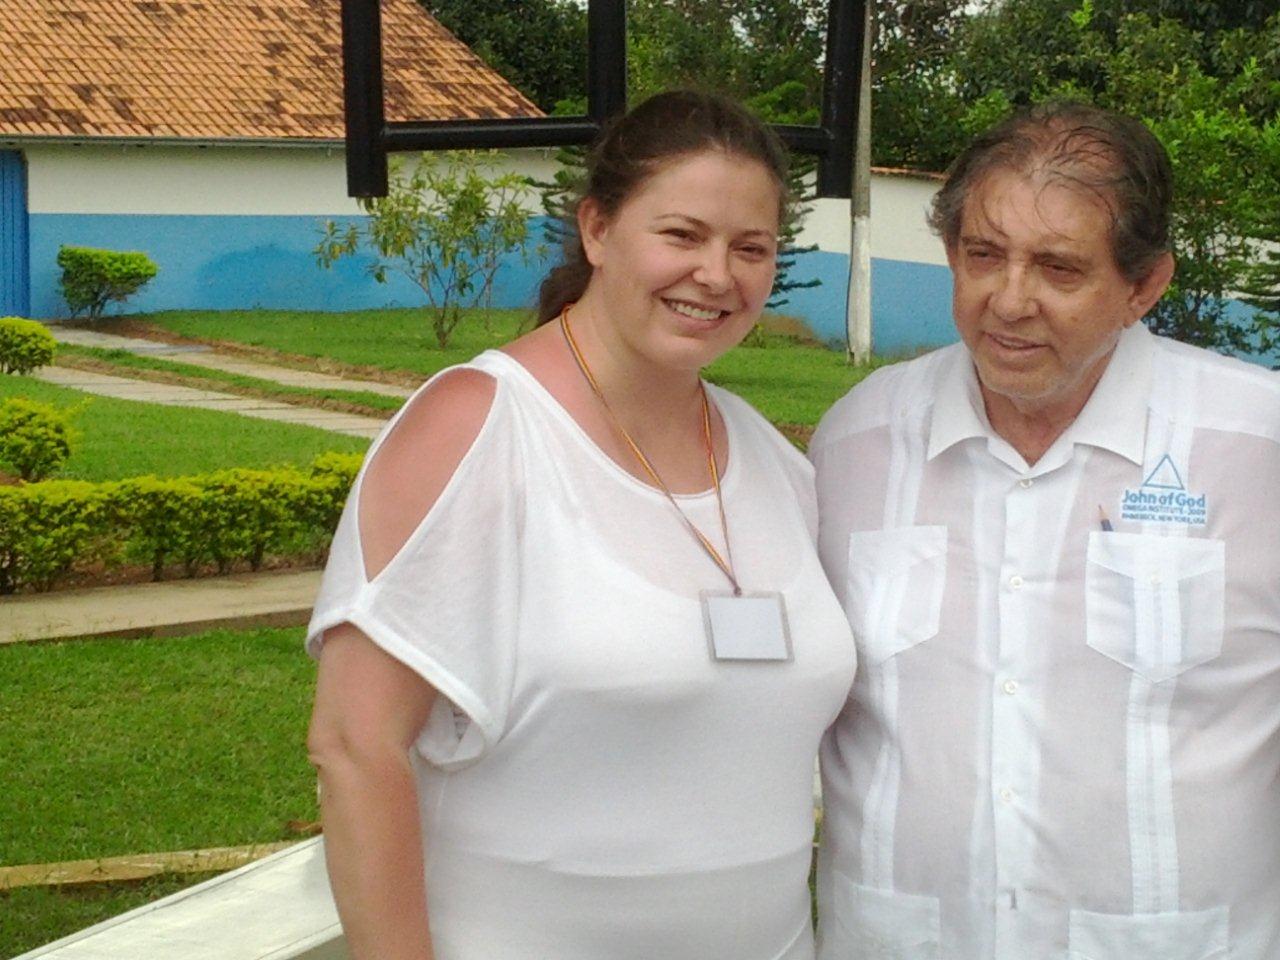 Din dorinta evolutiei spirituale, Rita a ajuns in Brazilia, la celebrul vindecator John of God